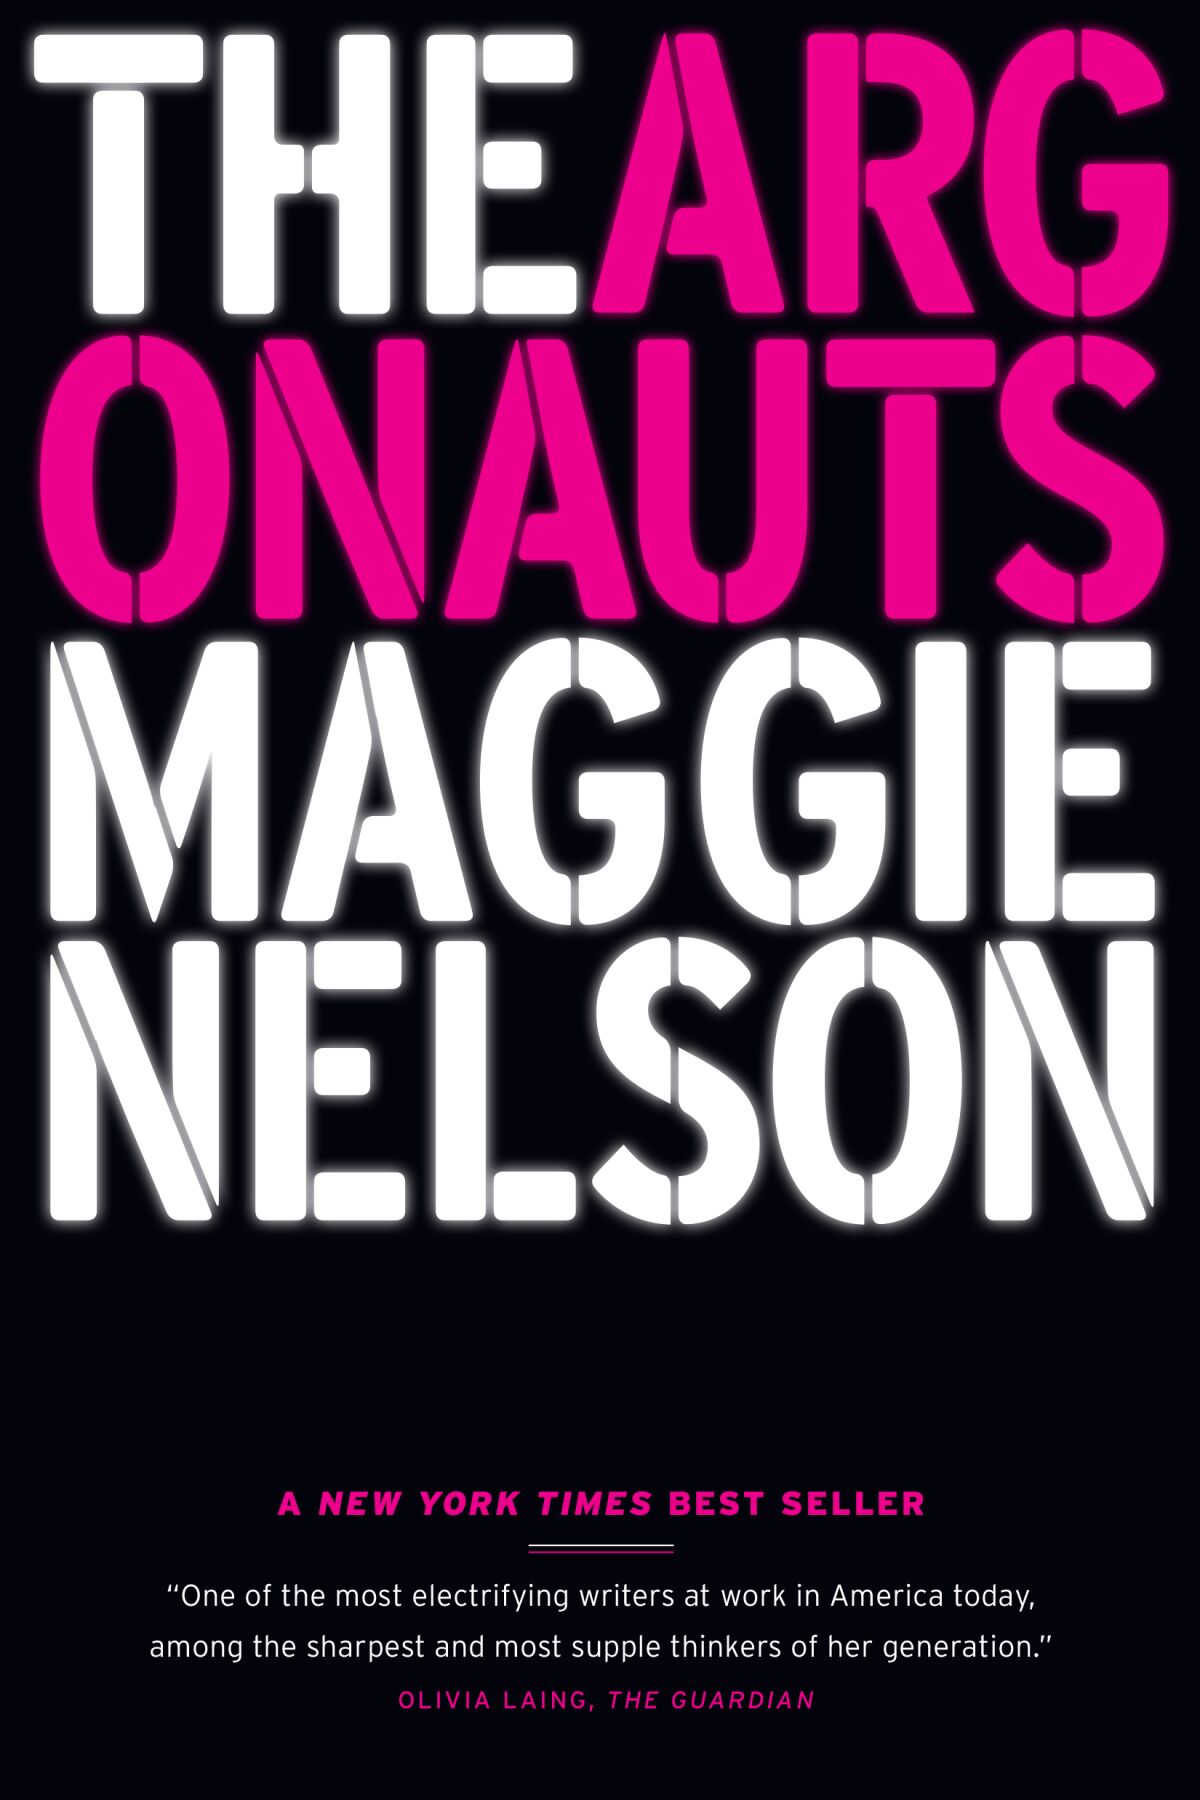 "Argonotlar" kaydeden Maggie Nelson